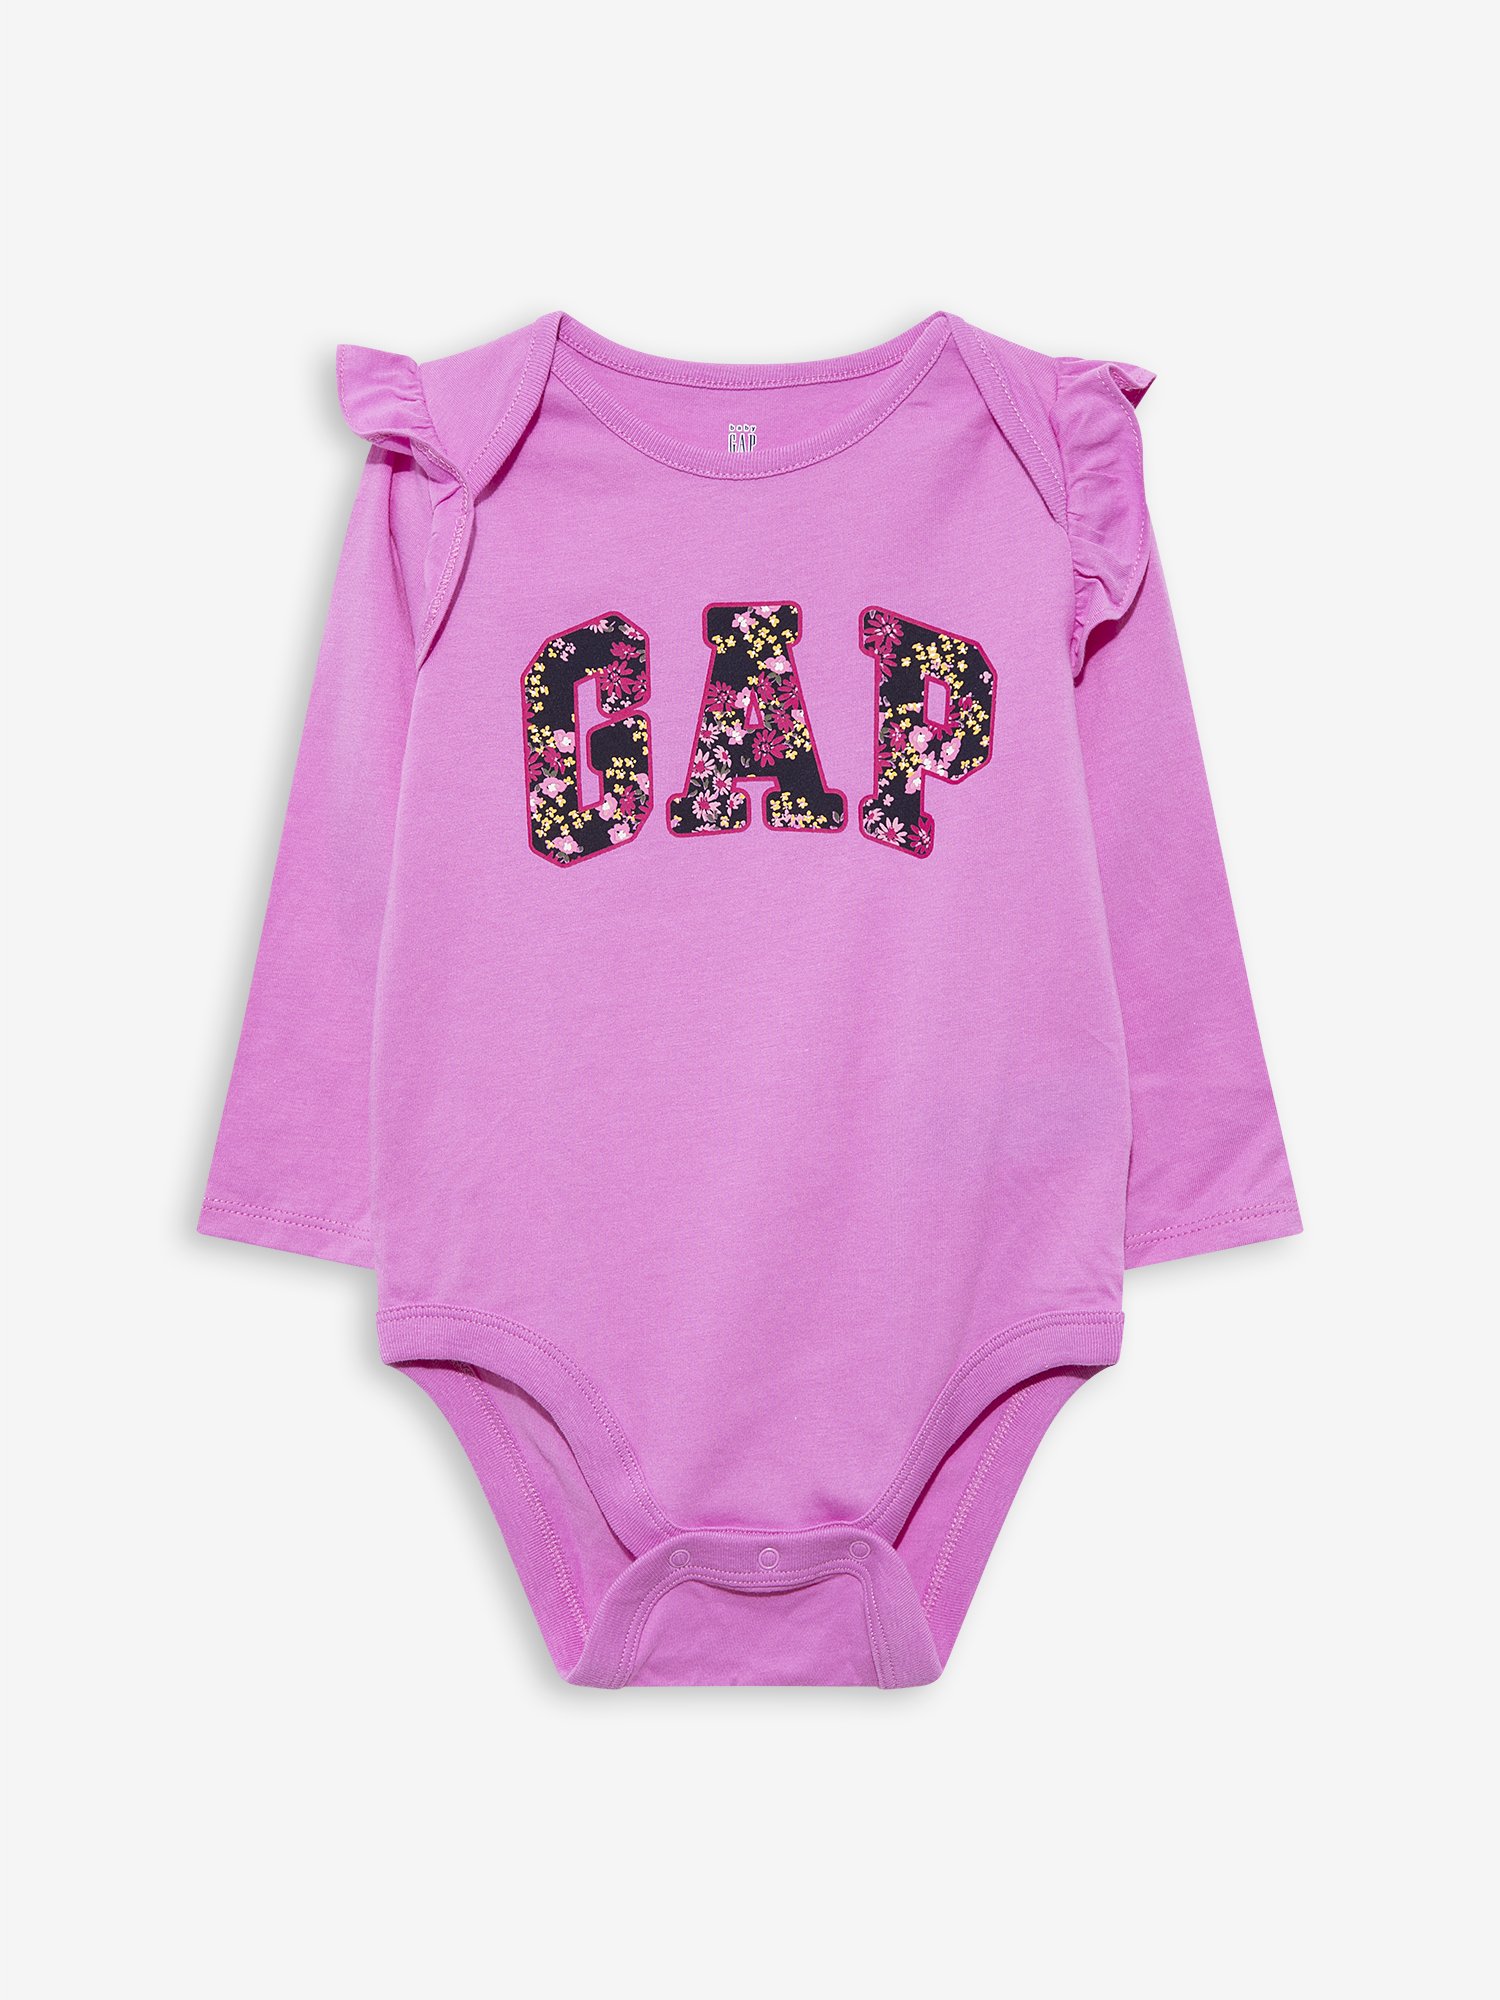 Gap Logo Baby Bodysuit product image